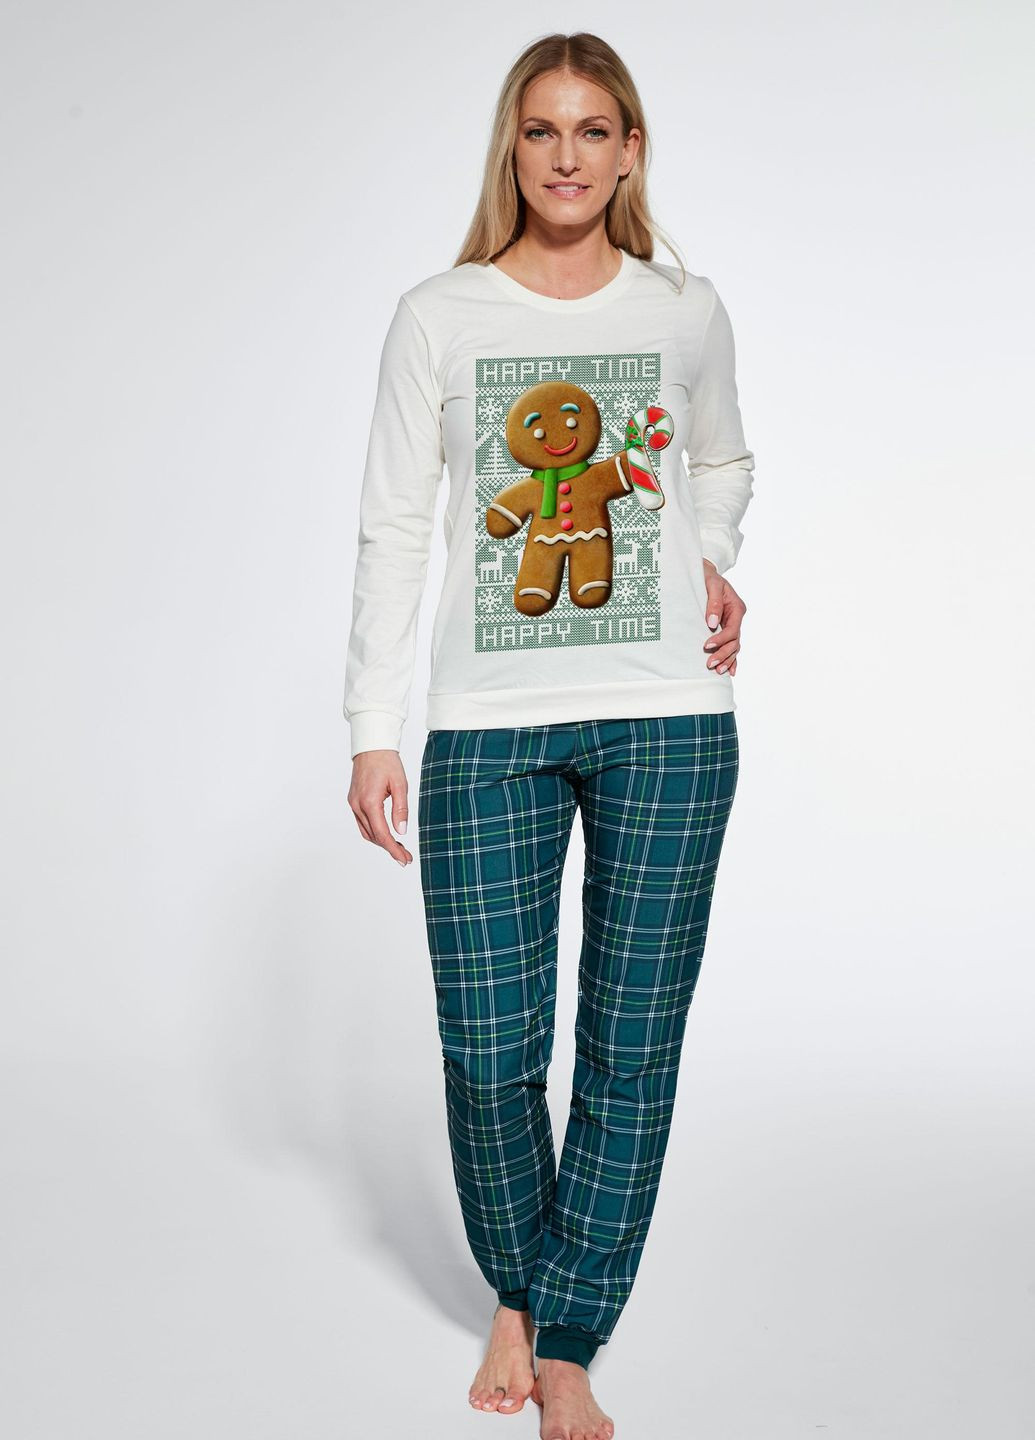 Комбинированная женская пижама 347 cookie 671-23 футболка + брюки Cornette